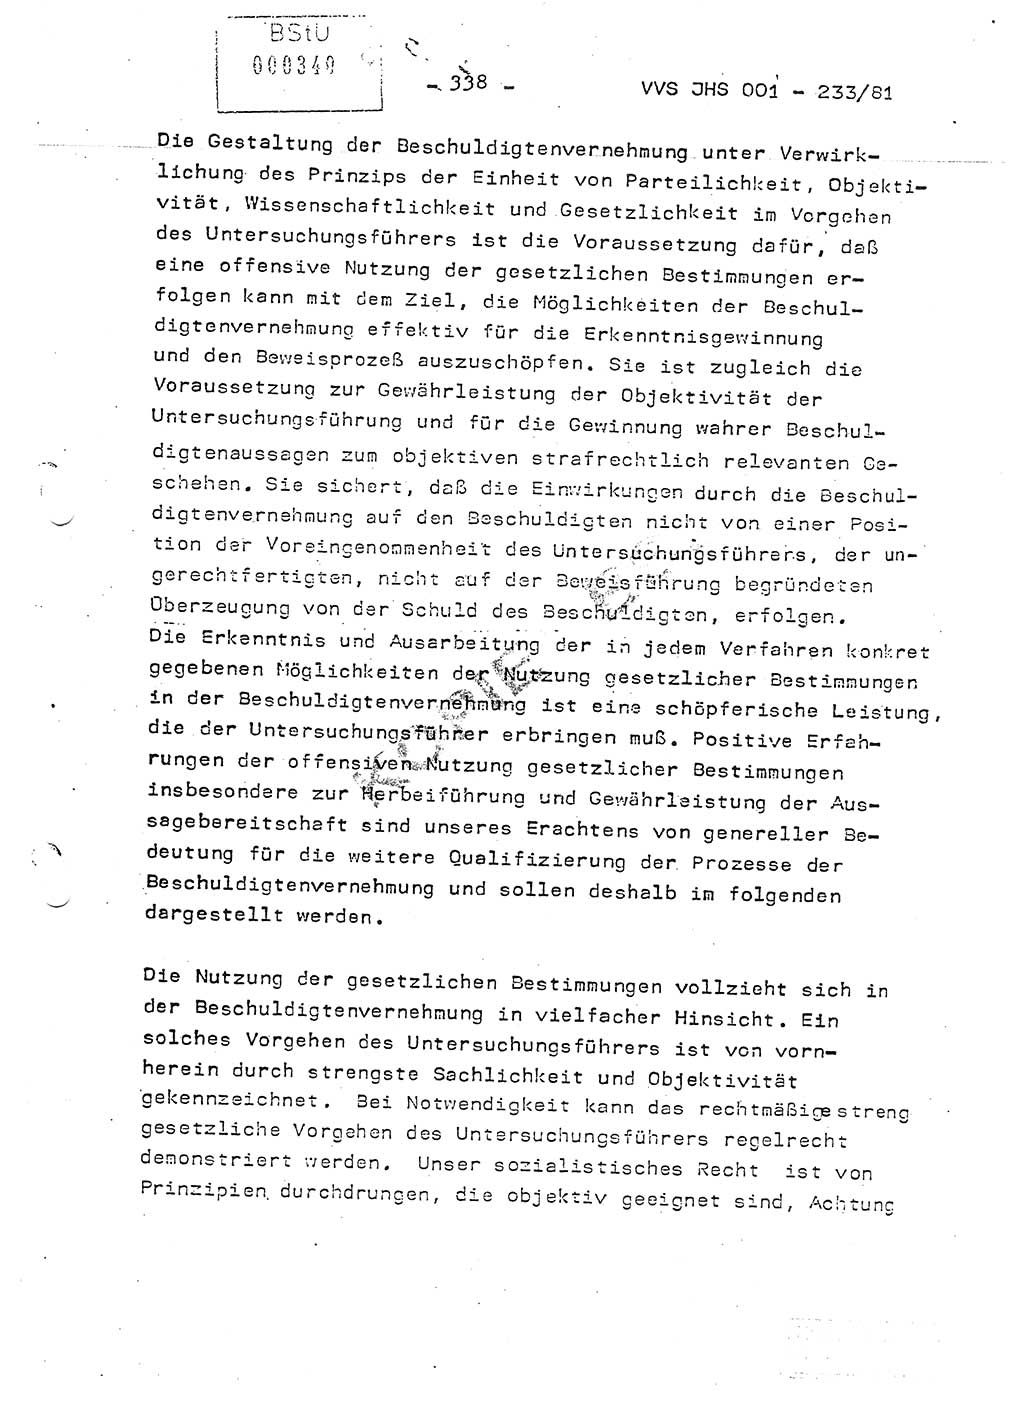 Dissertation Oberstleutnant Horst Zank (JHS), Oberstleutnant Dr. Karl-Heinz Knoblauch (JHS), Oberstleutnant Gustav-Adolf Kowalewski (HA Ⅸ), Oberstleutnant Wolfgang Plötner (HA Ⅸ), Ministerium für Staatssicherheit (MfS) [Deutsche Demokratische Republik (DDR)], Juristische Hochschule (JHS), Vertrauliche Verschlußsache (VVS) o001-233/81, Potsdam 1981, Blatt 338 (Diss. MfS DDR JHS VVS o001-233/81 1981, Bl. 338)